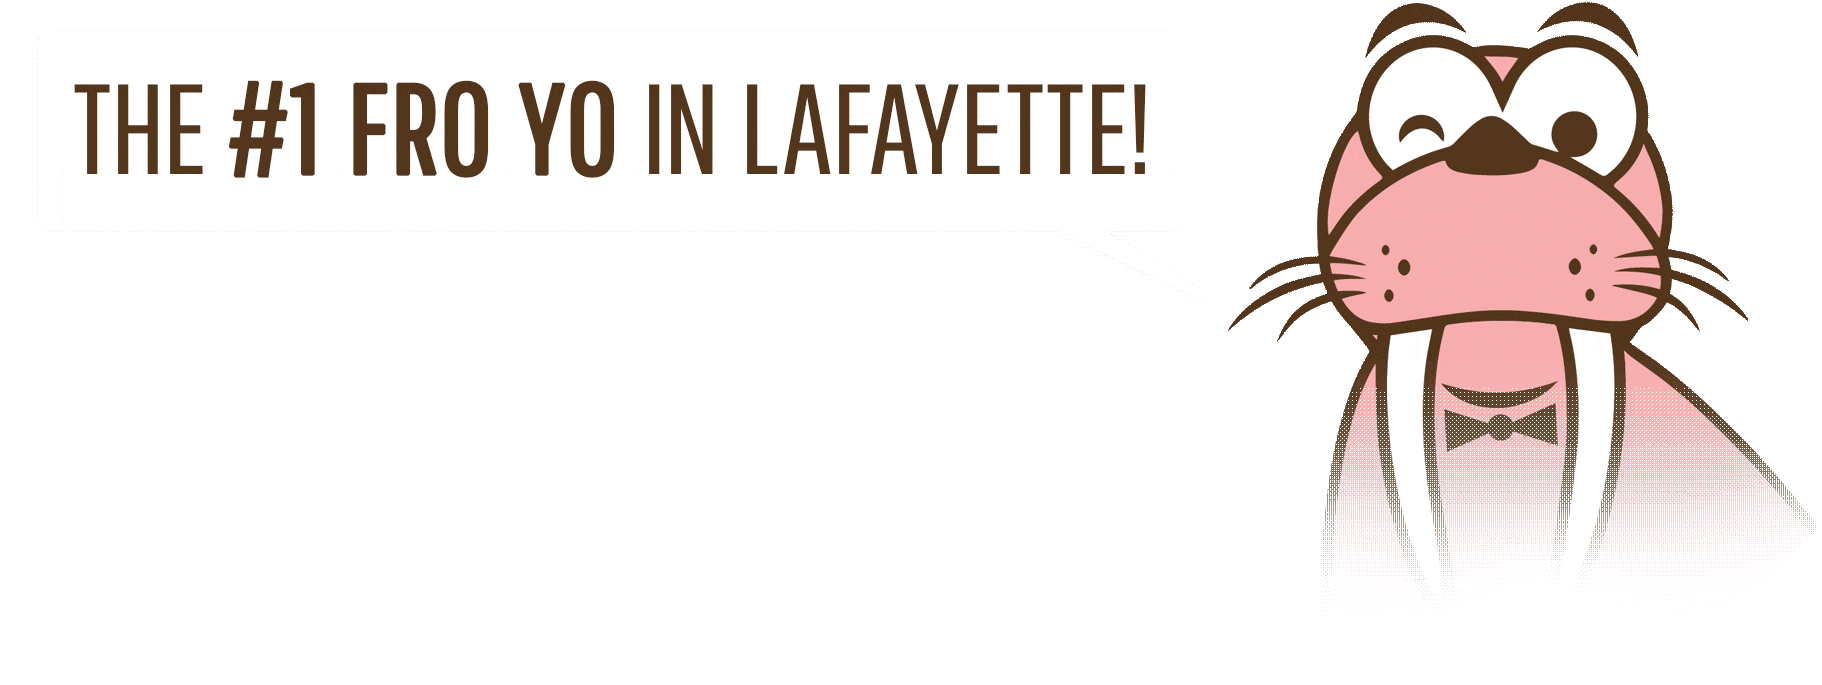 The #1 Fro Yo in Lafayette